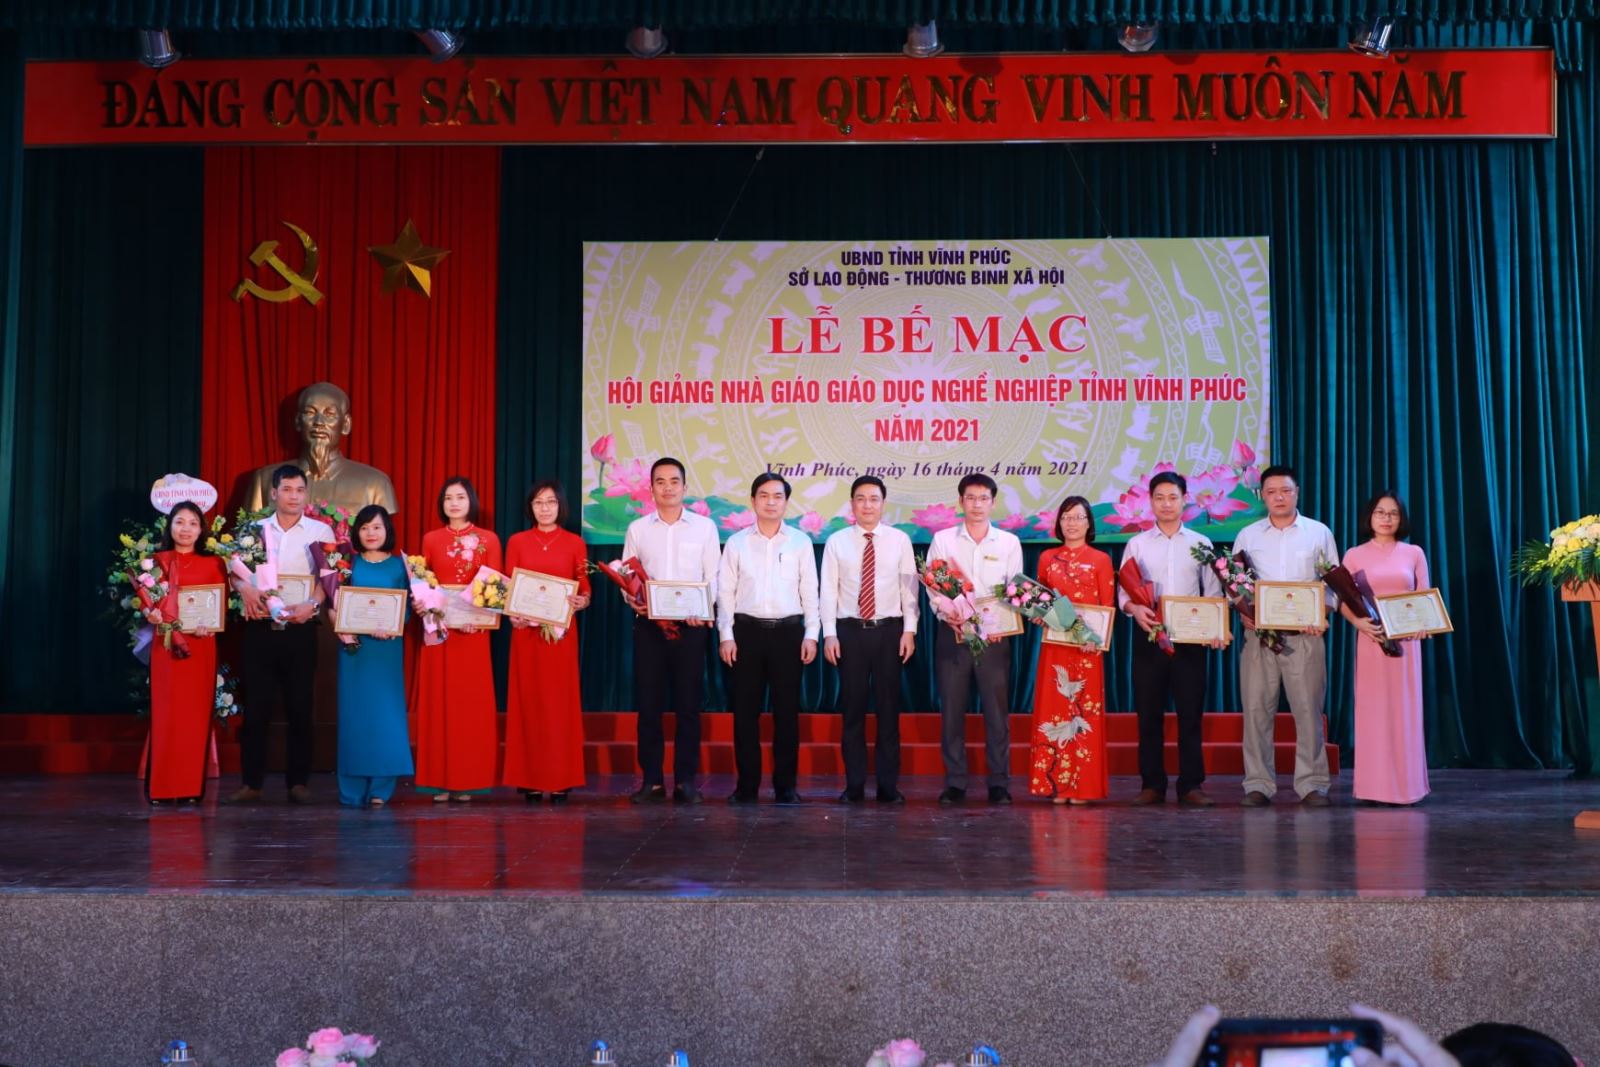 Phó Chủ tịch TT UBND tỉnh Vĩnh Phúc Vũ Việt Văn và Phó Giám đốc Sở LĐ, TB-XH Lê Minh Tân trao giấy khen cho các nhà giáo đạt giải Nhất.